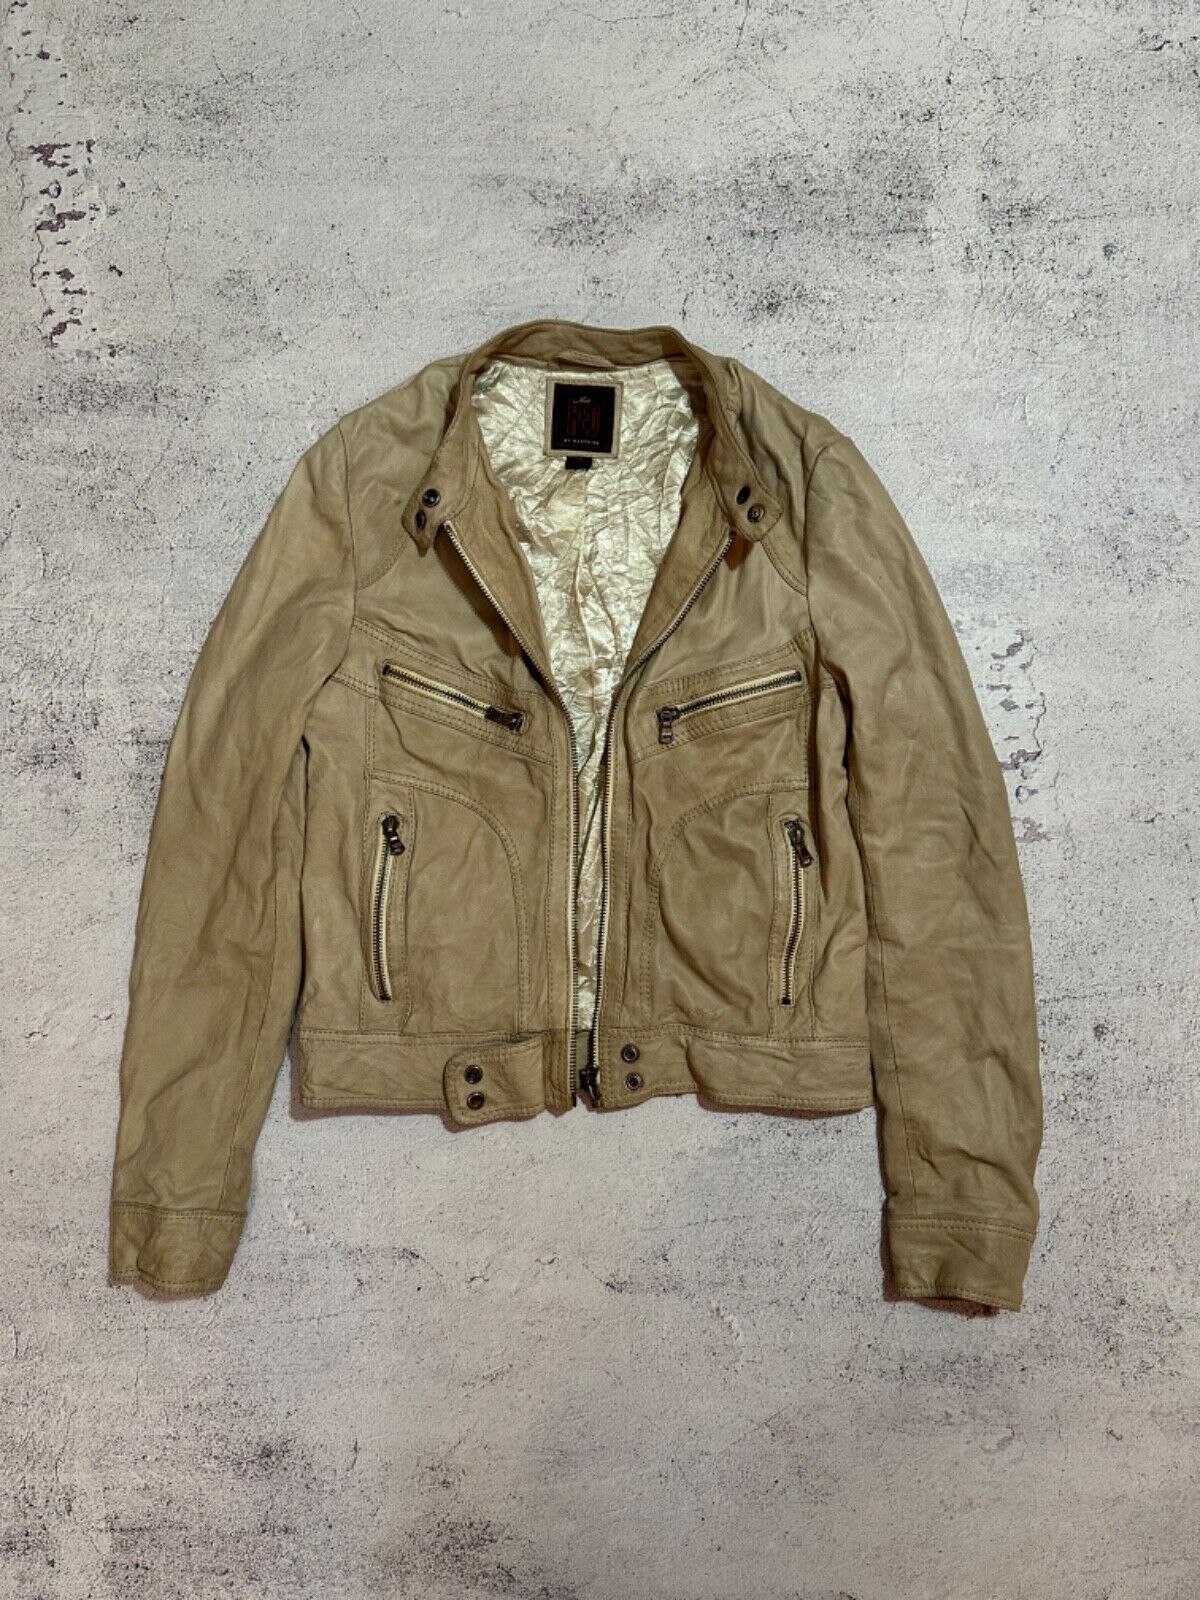 redskins vintage leather jacket - image 19